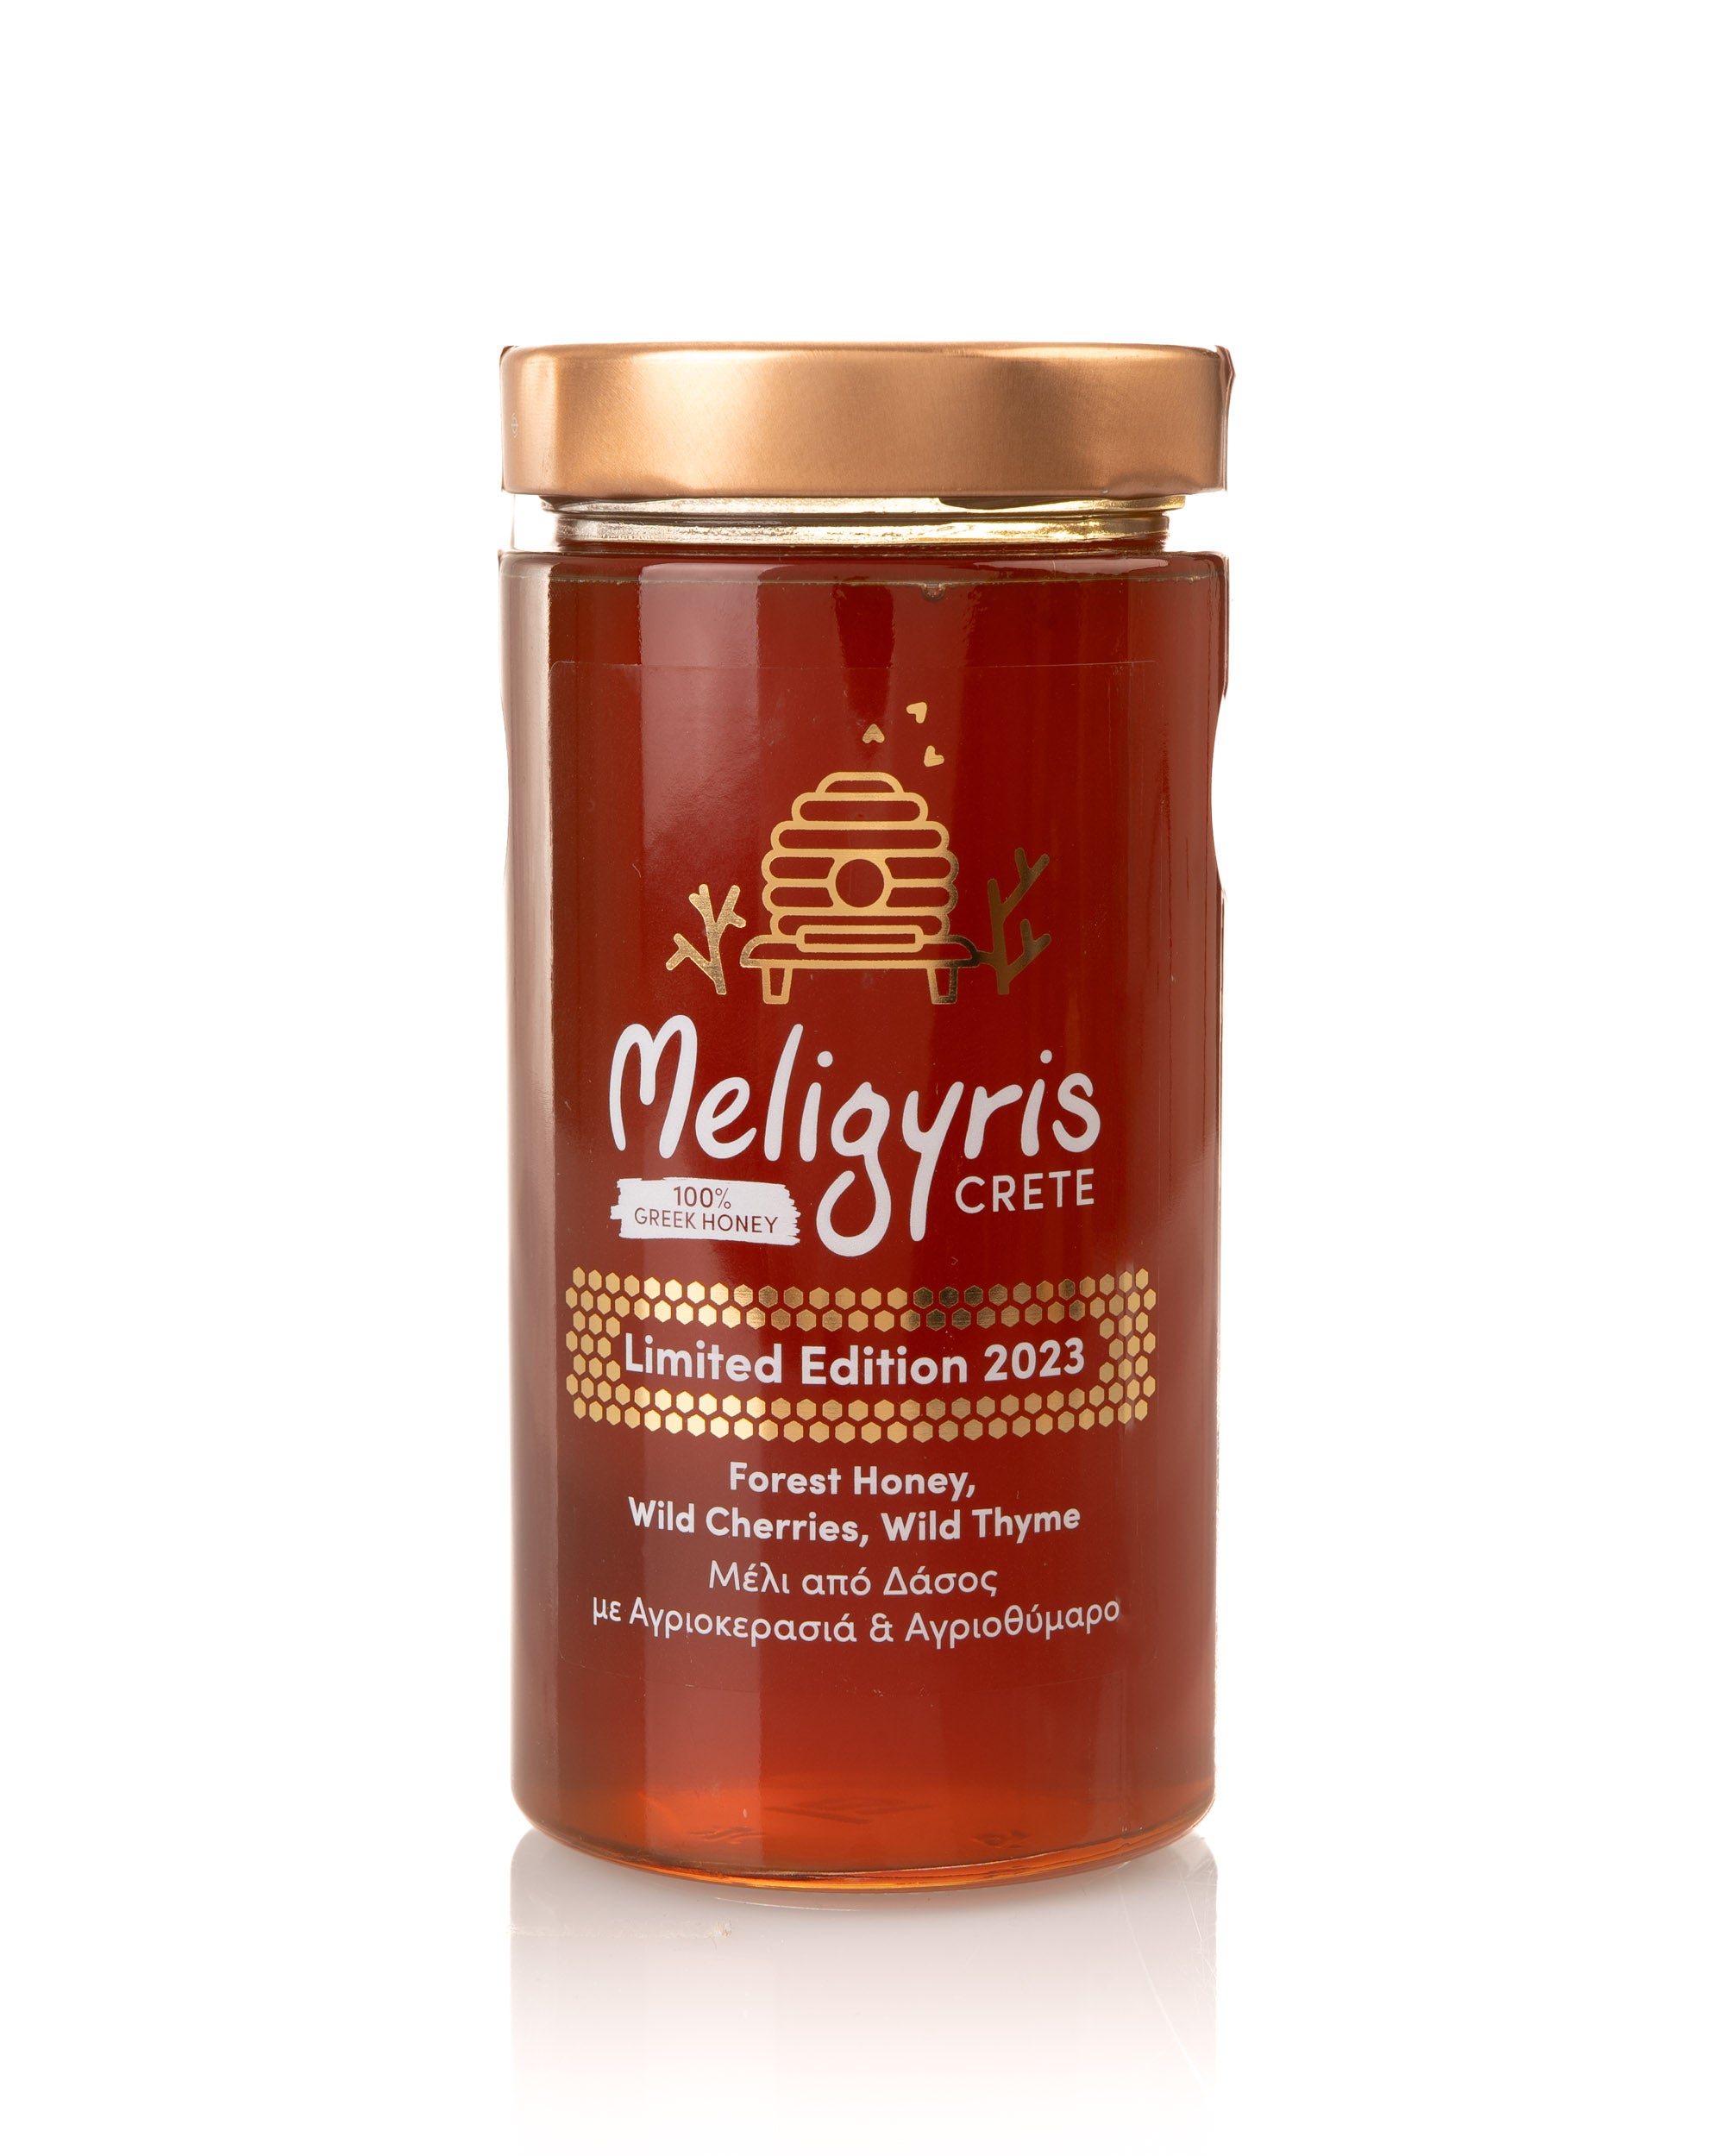 Greek Forest Honey, Wild Cherries , Wild Thyme - Limited Edition 2023